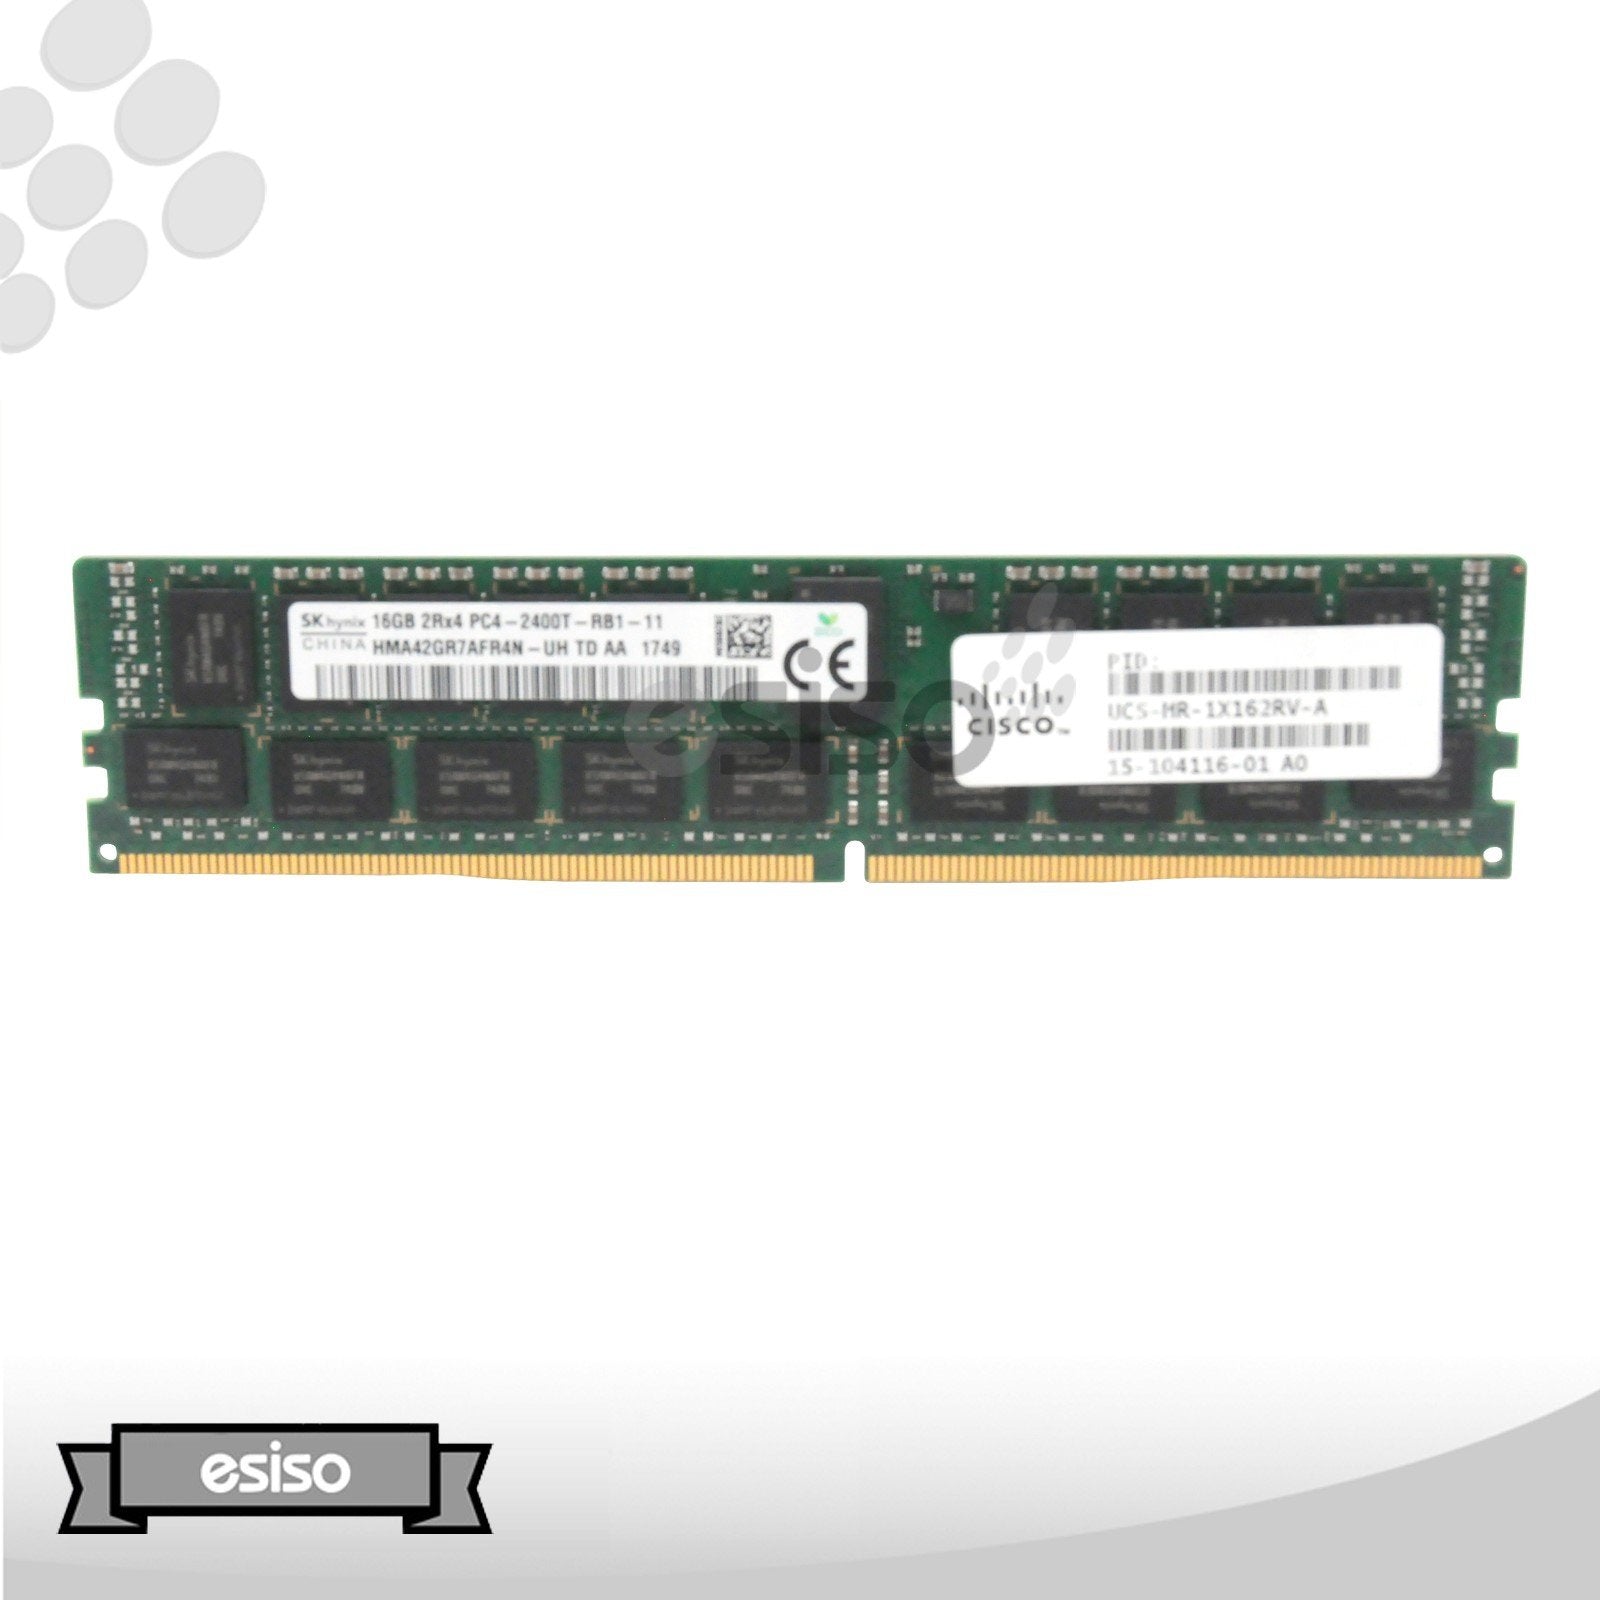 UCS-MR-1X162RV-A 15-104116-01 CISCO 16GB 2R1X PC4-2400T DDR4 MEMORY (1x16GB)